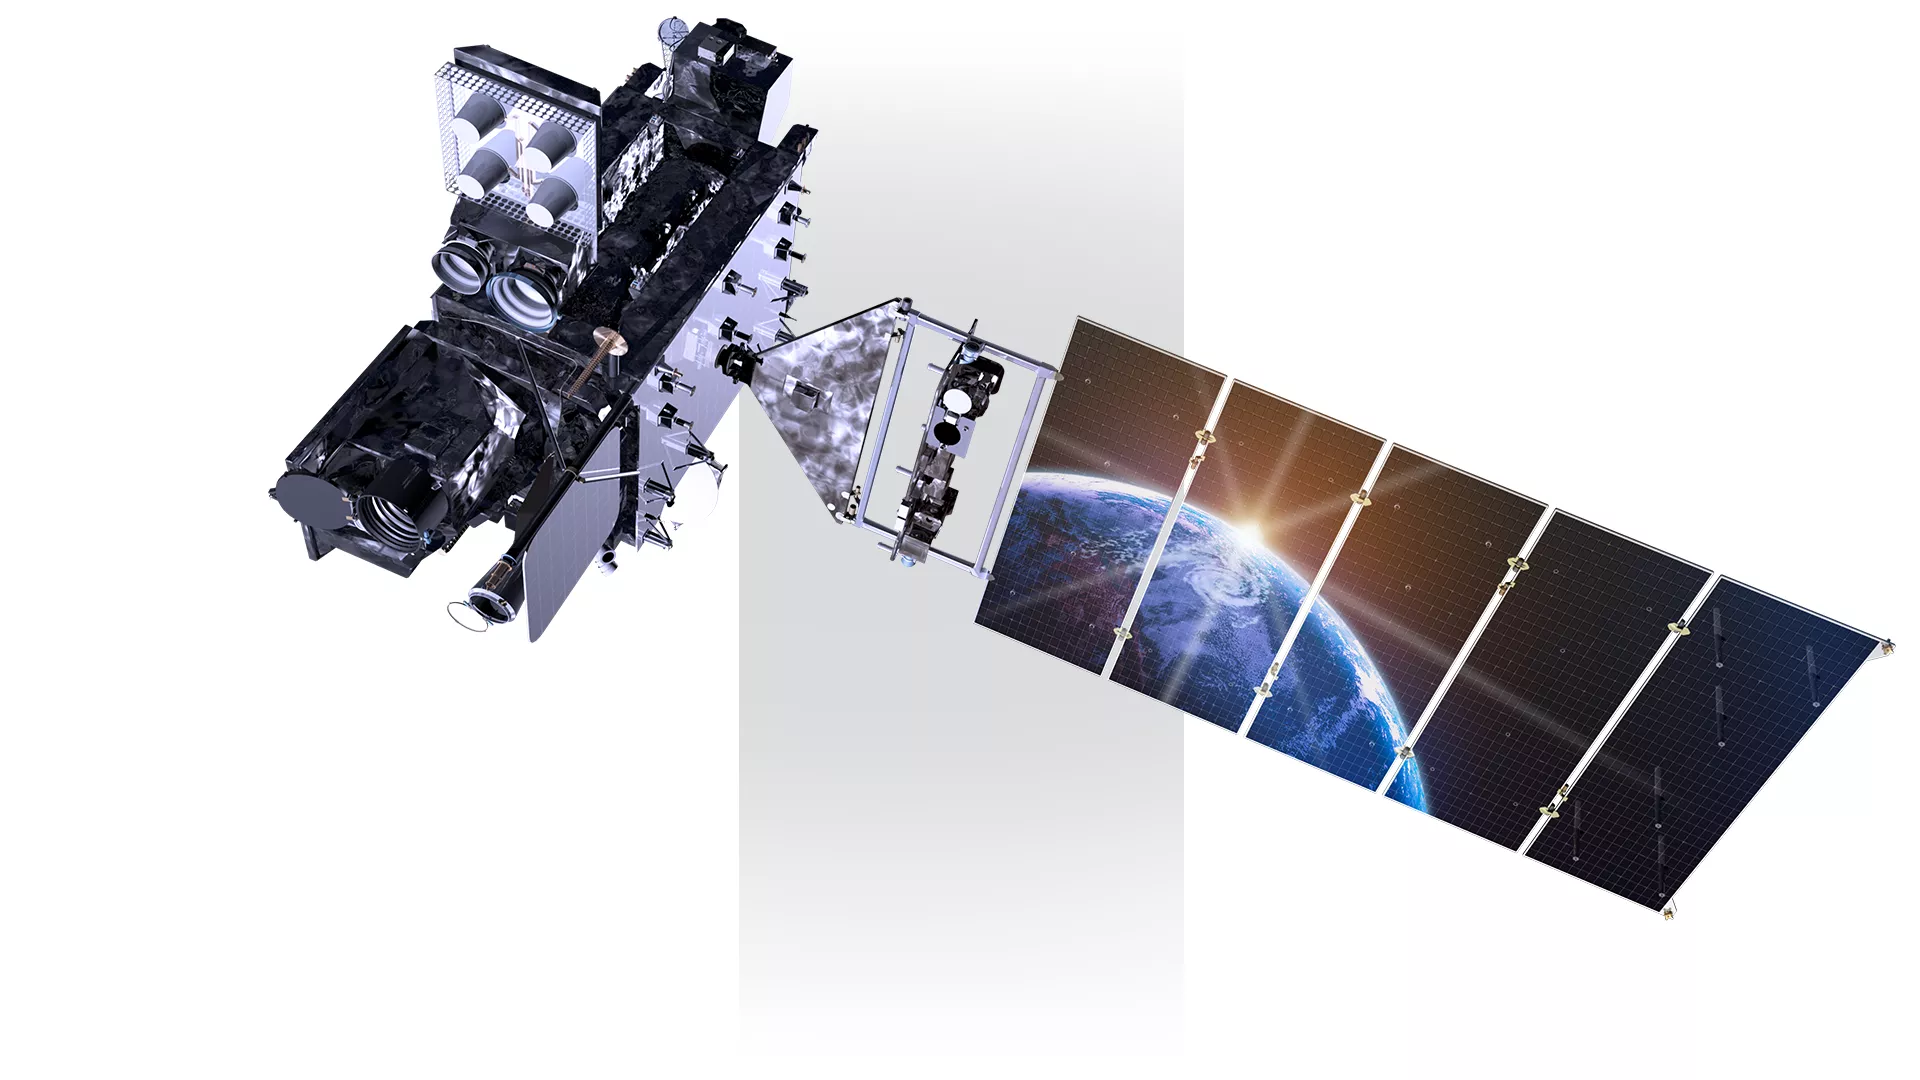 GOES-R satellite